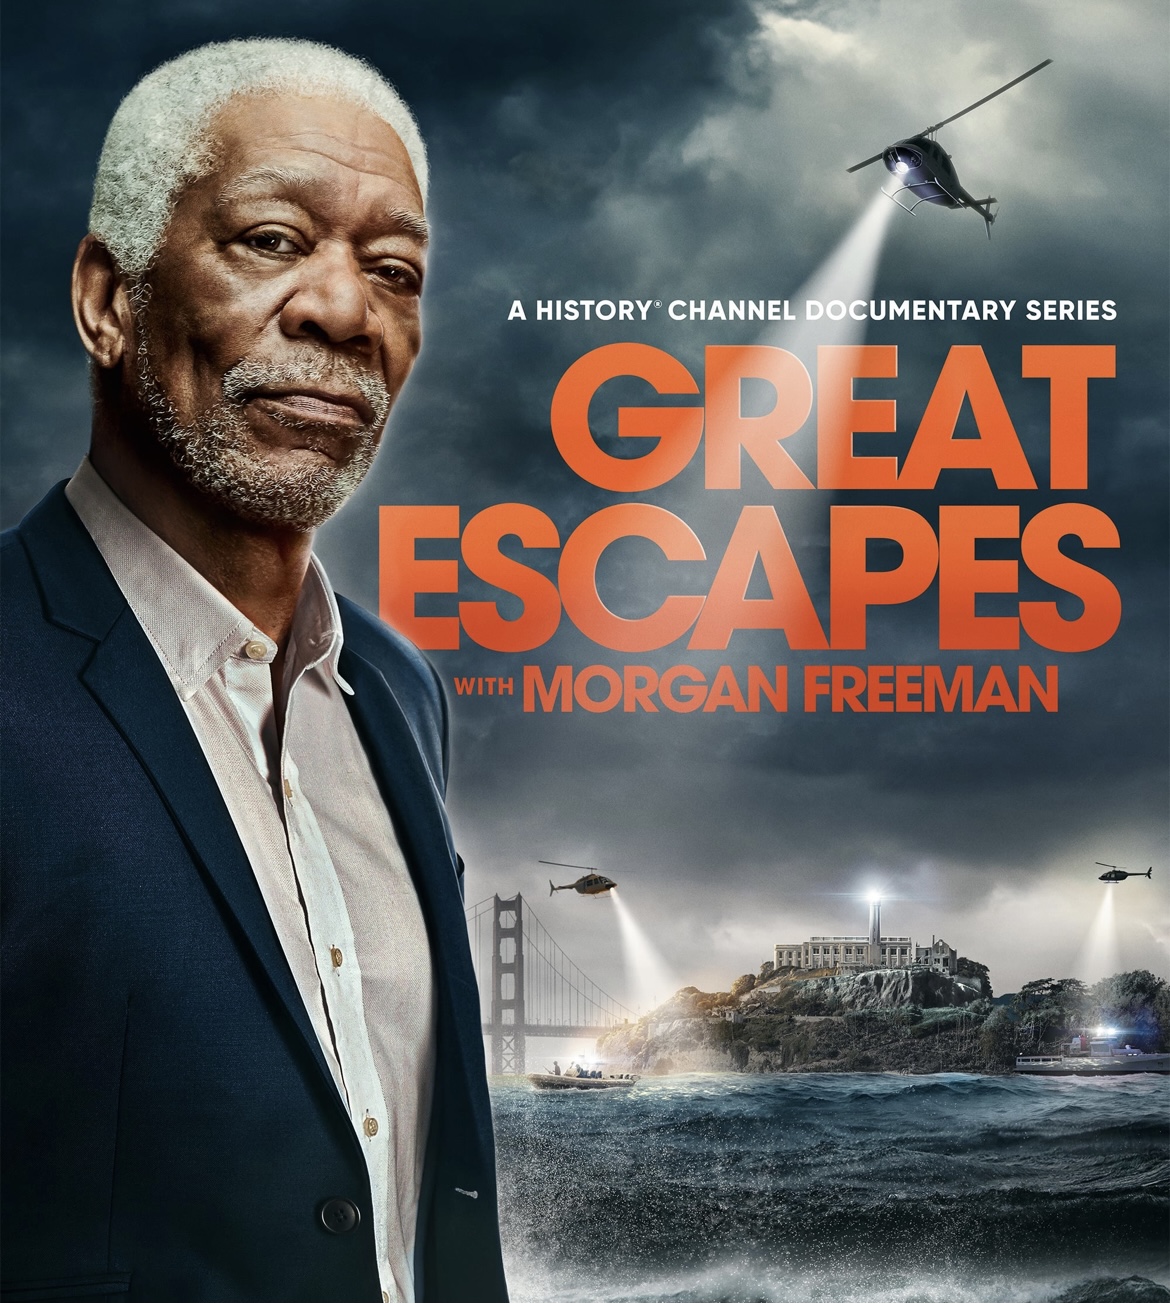 Великие побеги с Морганом Фрименом/ Great Escapes with Morgan Freeman (2021)